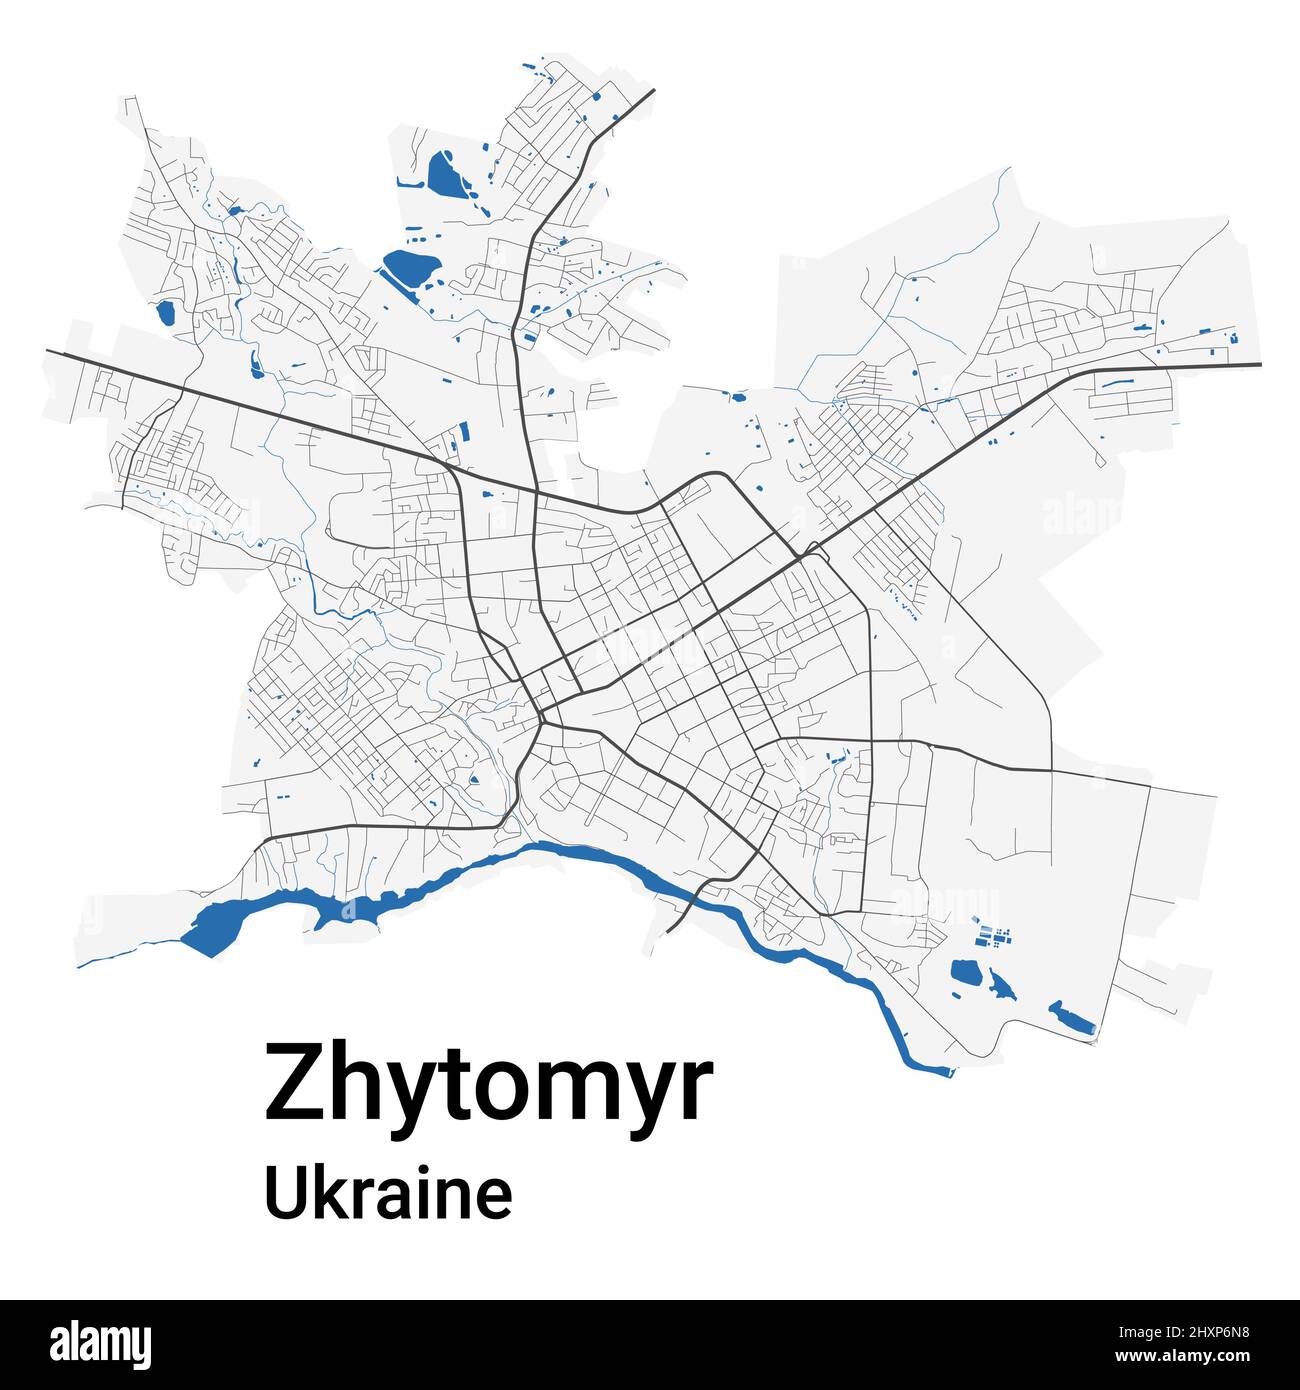 Mappa vettoriale di Zhytomyr. Mappa dettagliata dell'area amministrativa della città di Zhytomyr. Panorama urbano. Illustrazione vettoriale senza royalty. Mappa stradale con autostrade, Illustrazione Vettoriale